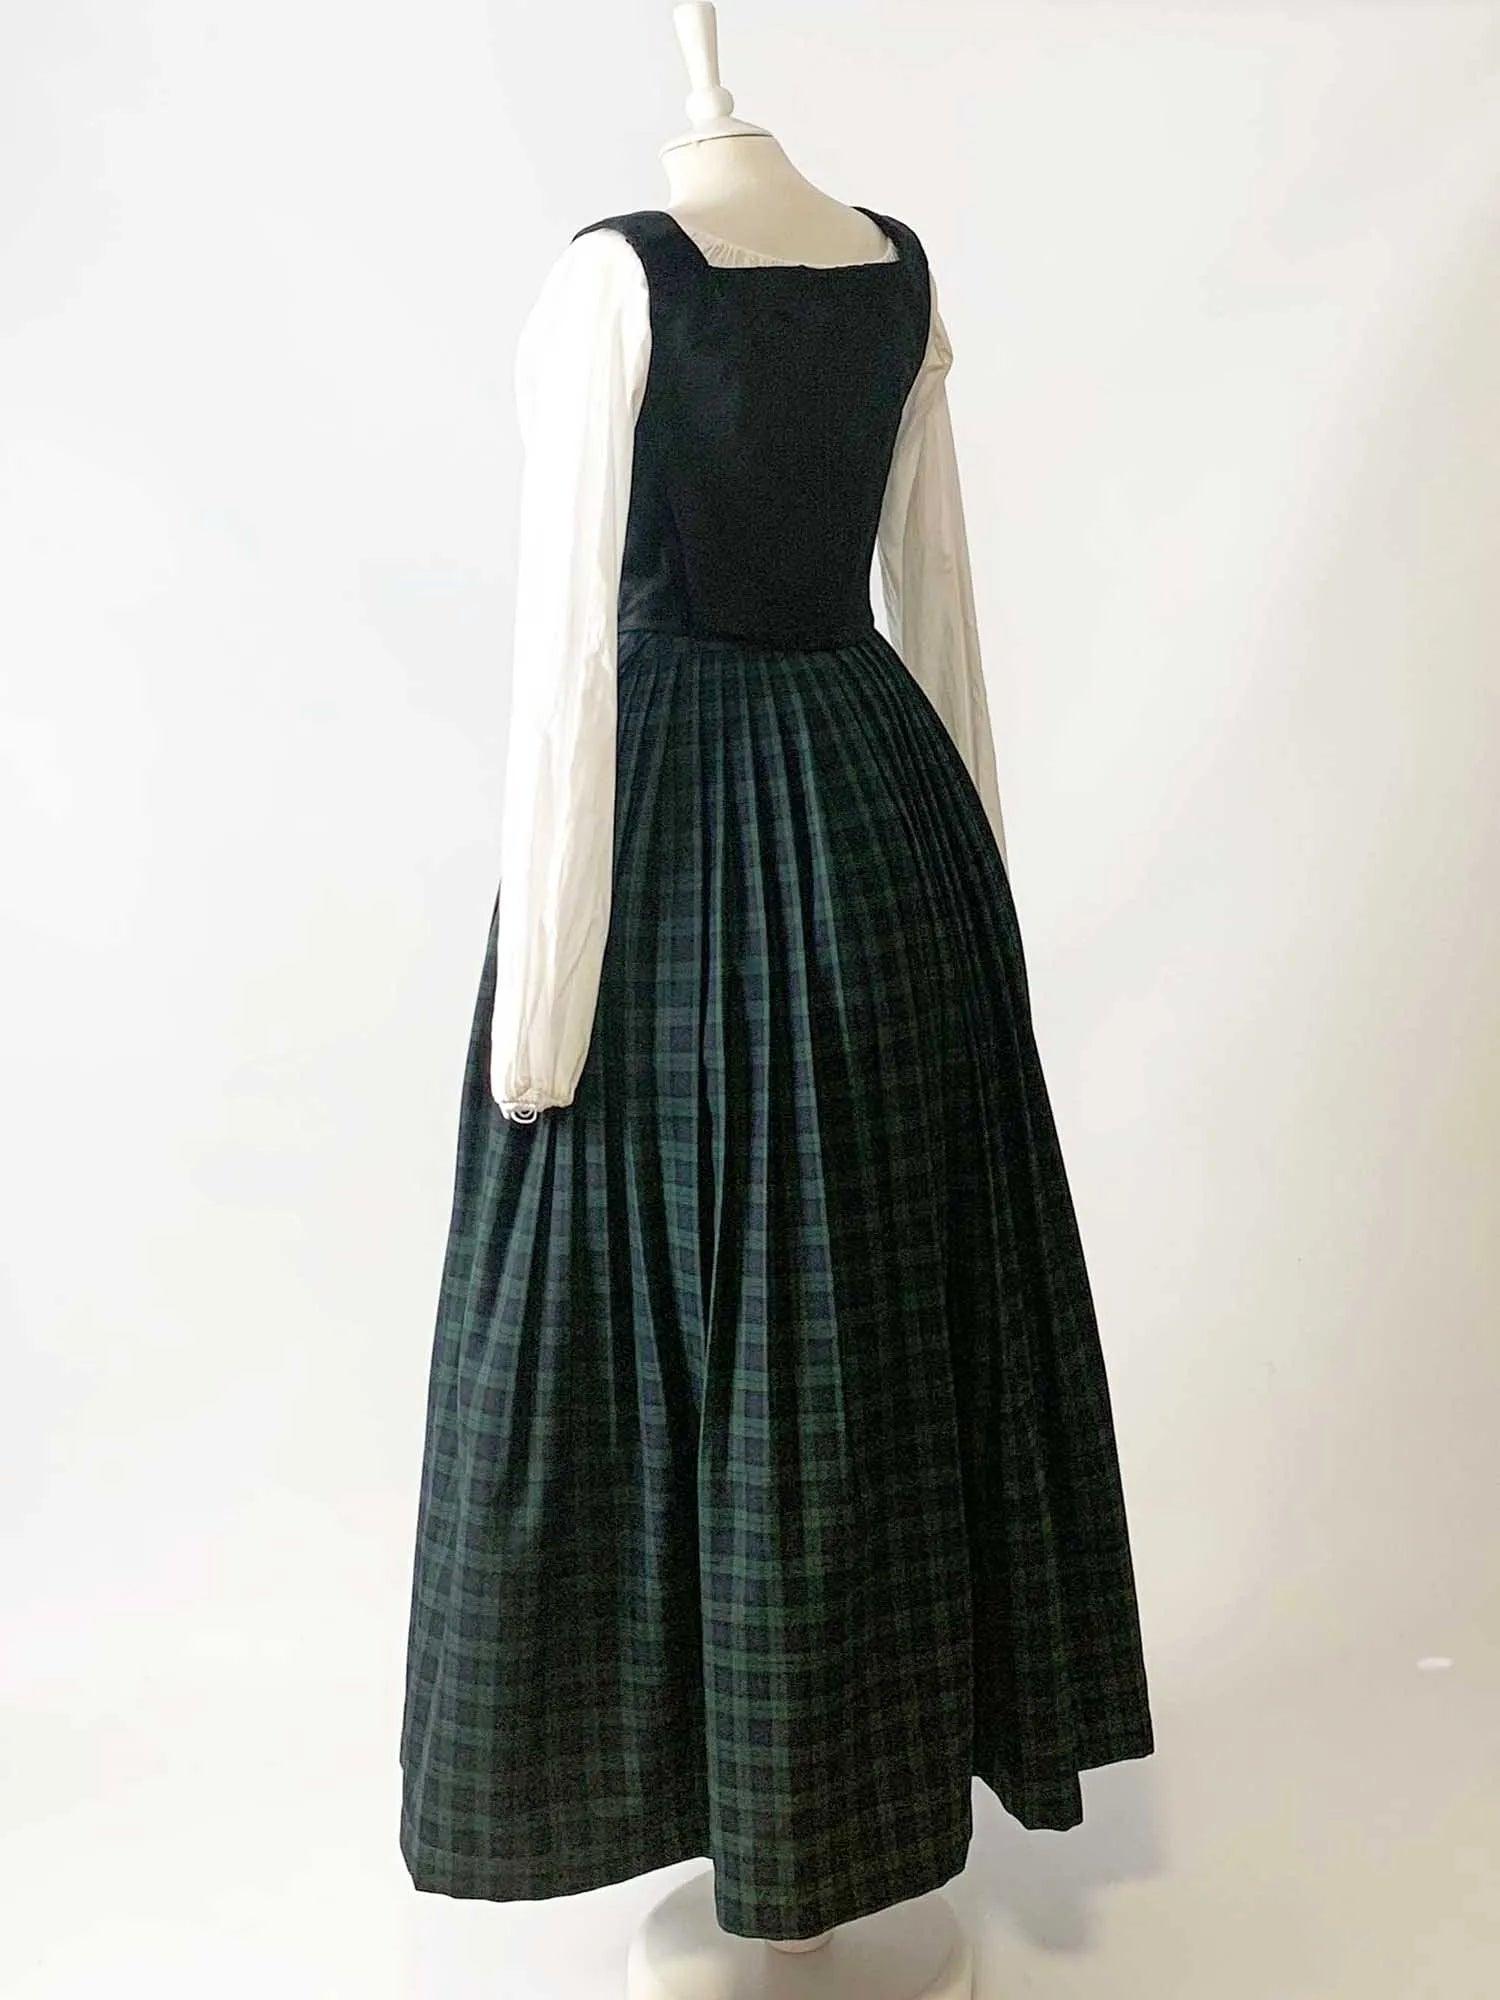 ANN, Renaissance Costume in Black Velvet &amp; Black Watch Tartan Skirt - Atelier Serraspina